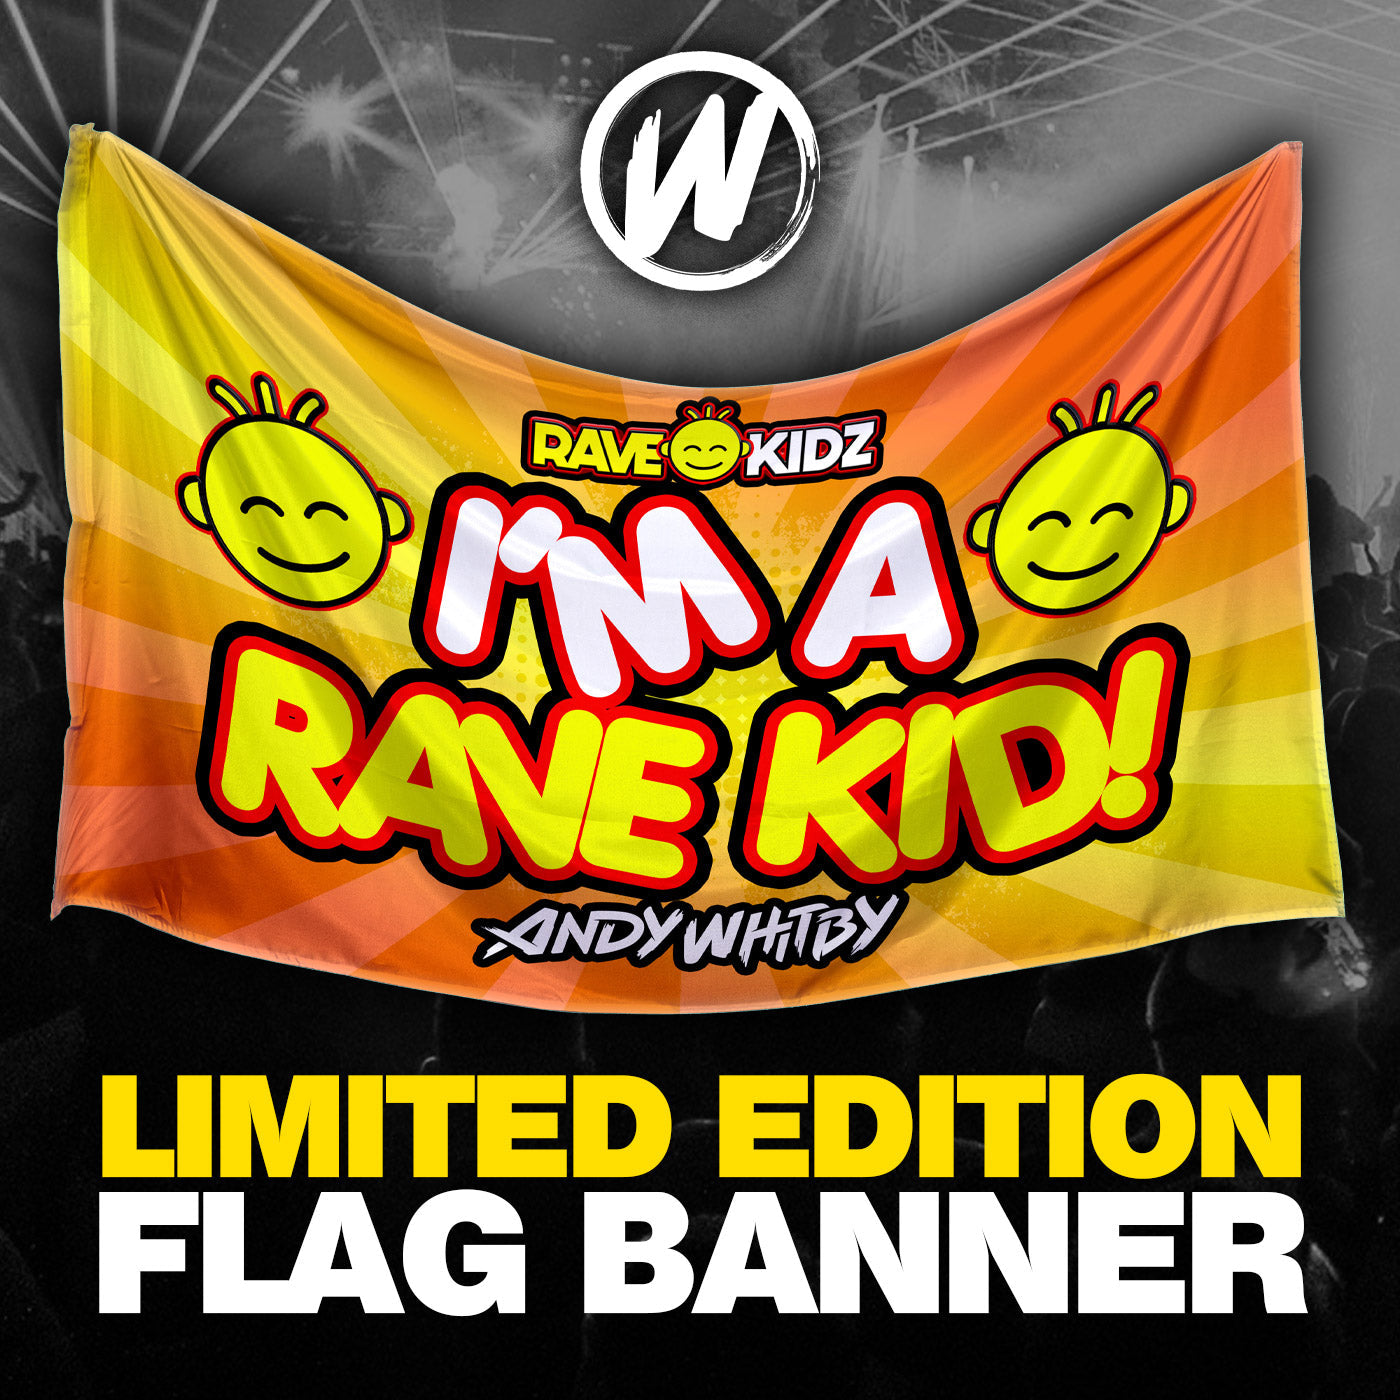 Rave Kidz Flag Banner (5ft x 3ft)